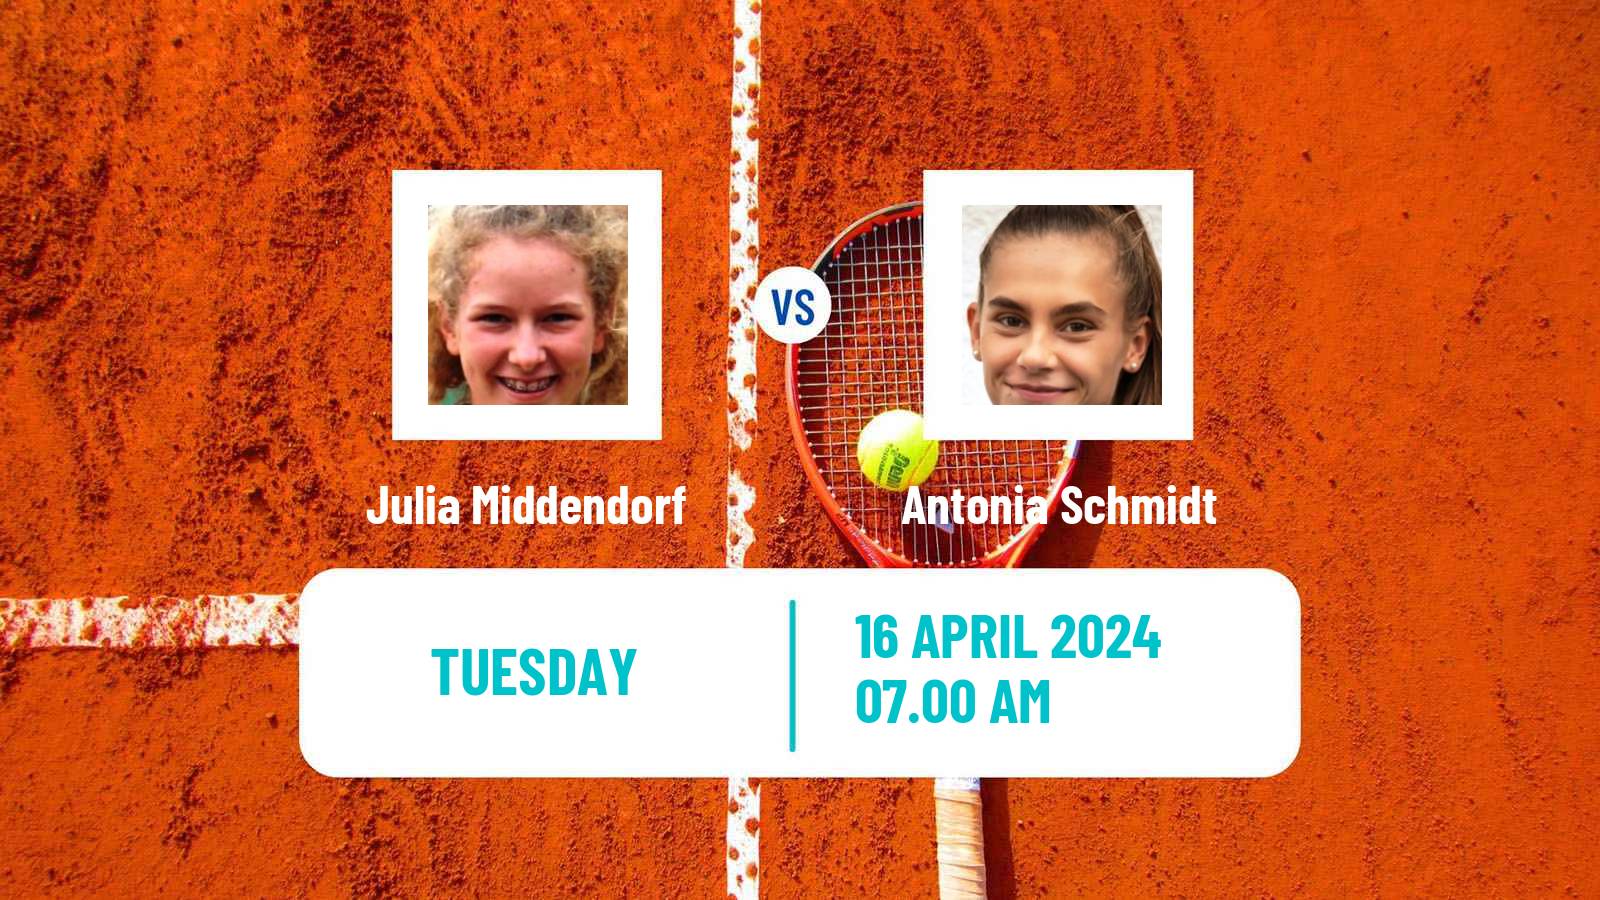 Tennis ITF W35 Hammamet 5 Women Julia Middendorf - Antonia Schmidt